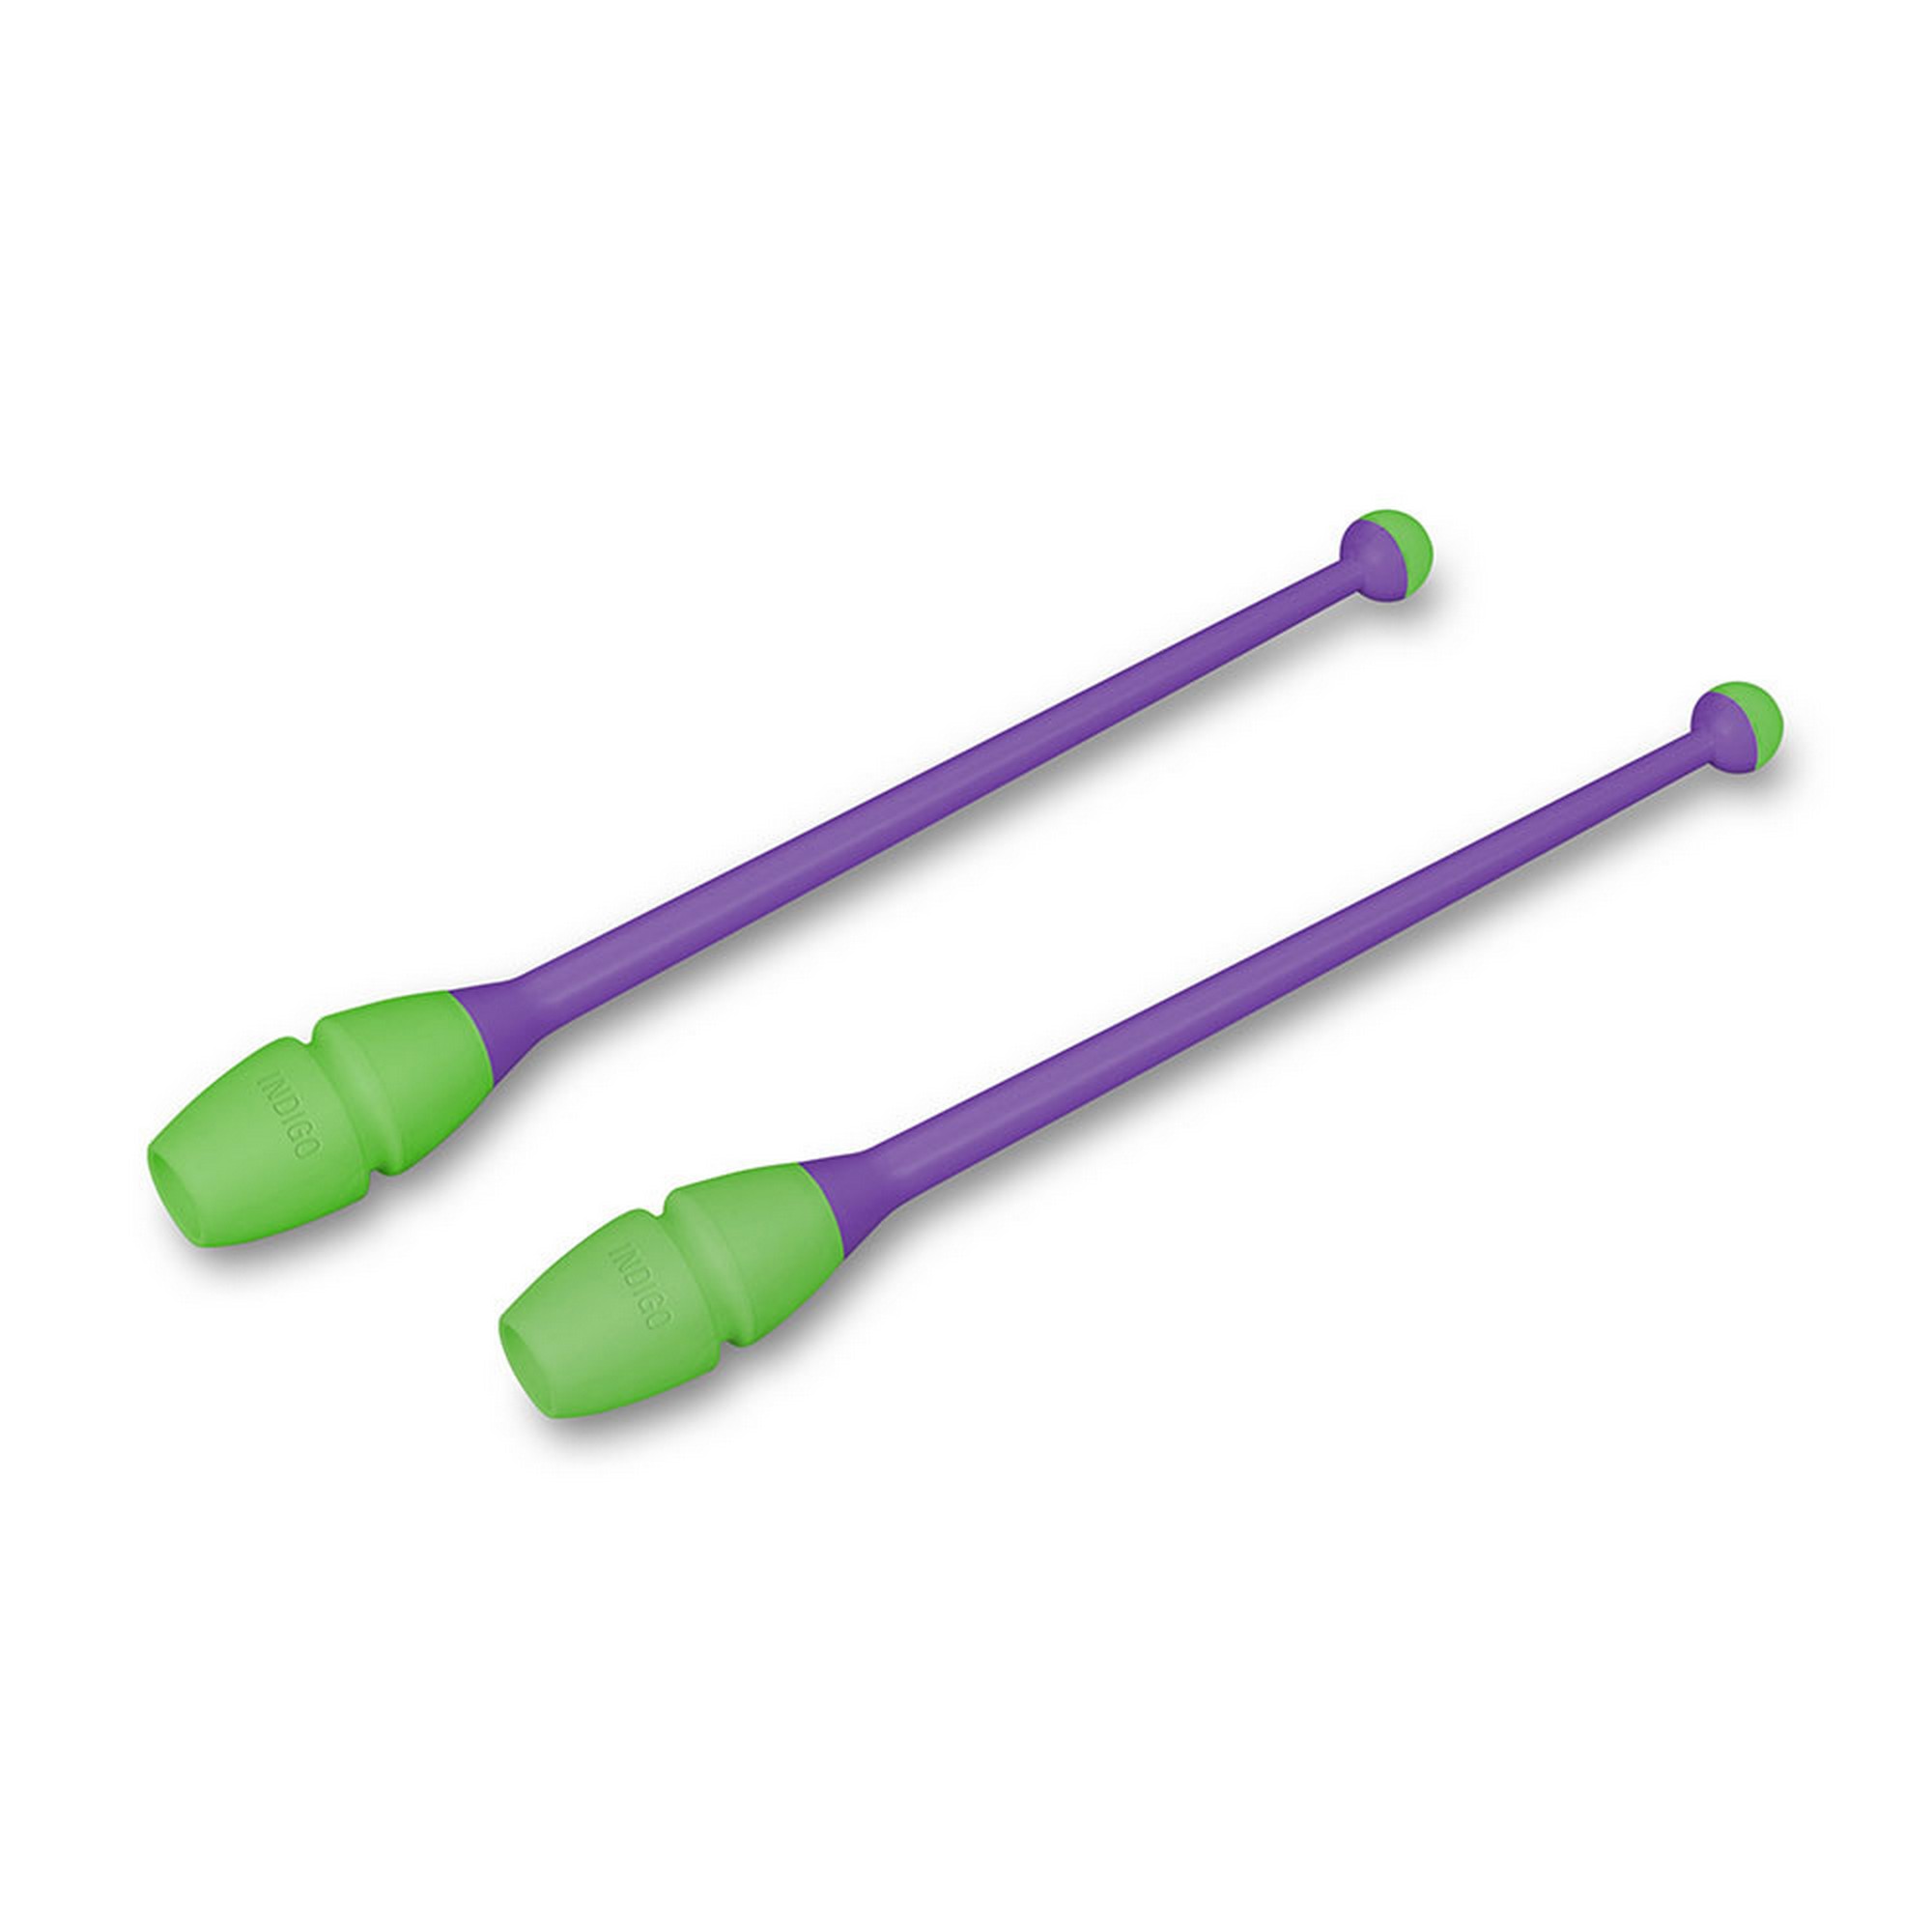 Булавы для художественной гимнастики Indigo 45 см, пластик, каучук, 2шт IN019-VLG фиолетовый-салатовый 2000_2000